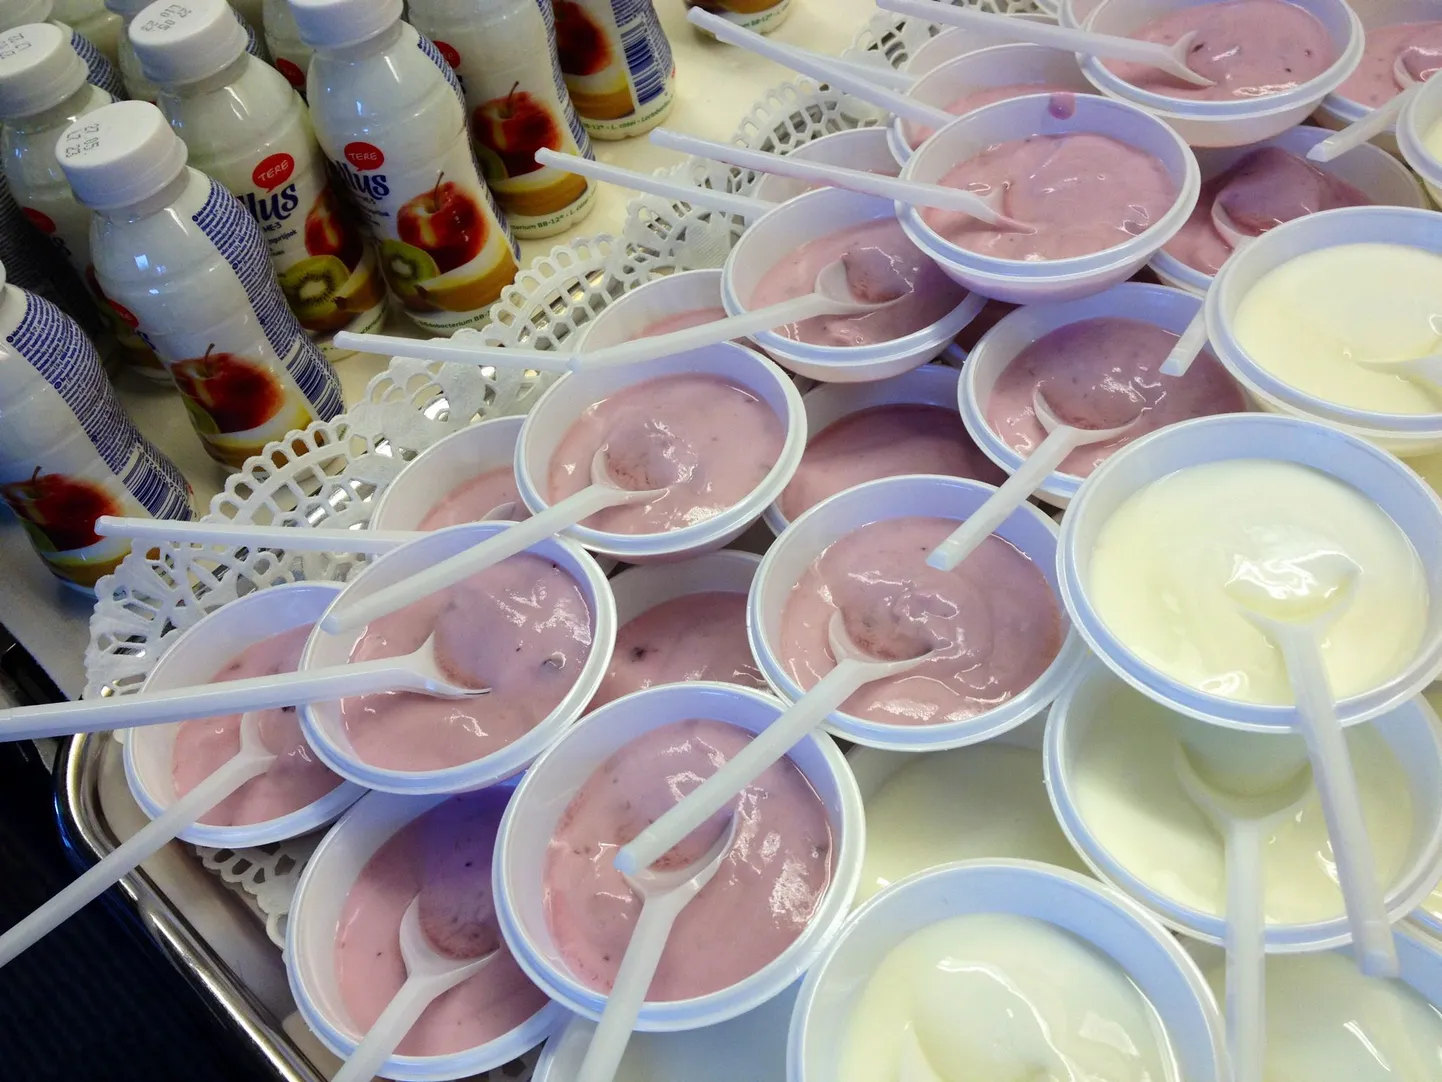 Eesti parim piimatoode 2012: Tere Natural vähendatud laktoosisisaldusega maitsestamata jogurt.